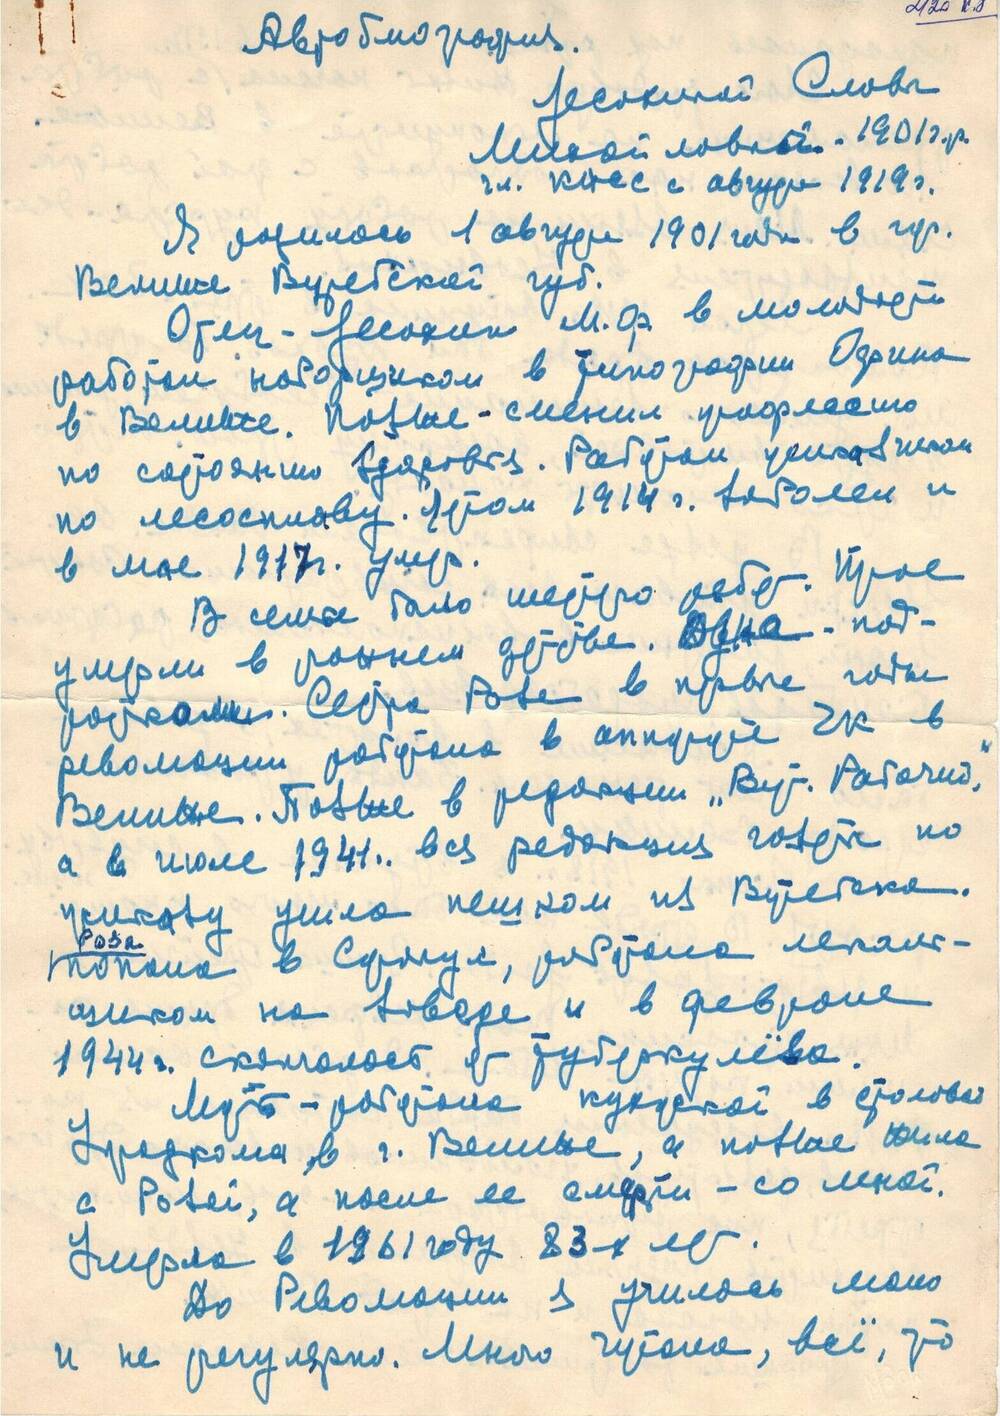 Письмо-воспоминание Лесохиной Славы Михайловны – велижанки 1-ой коммунистки